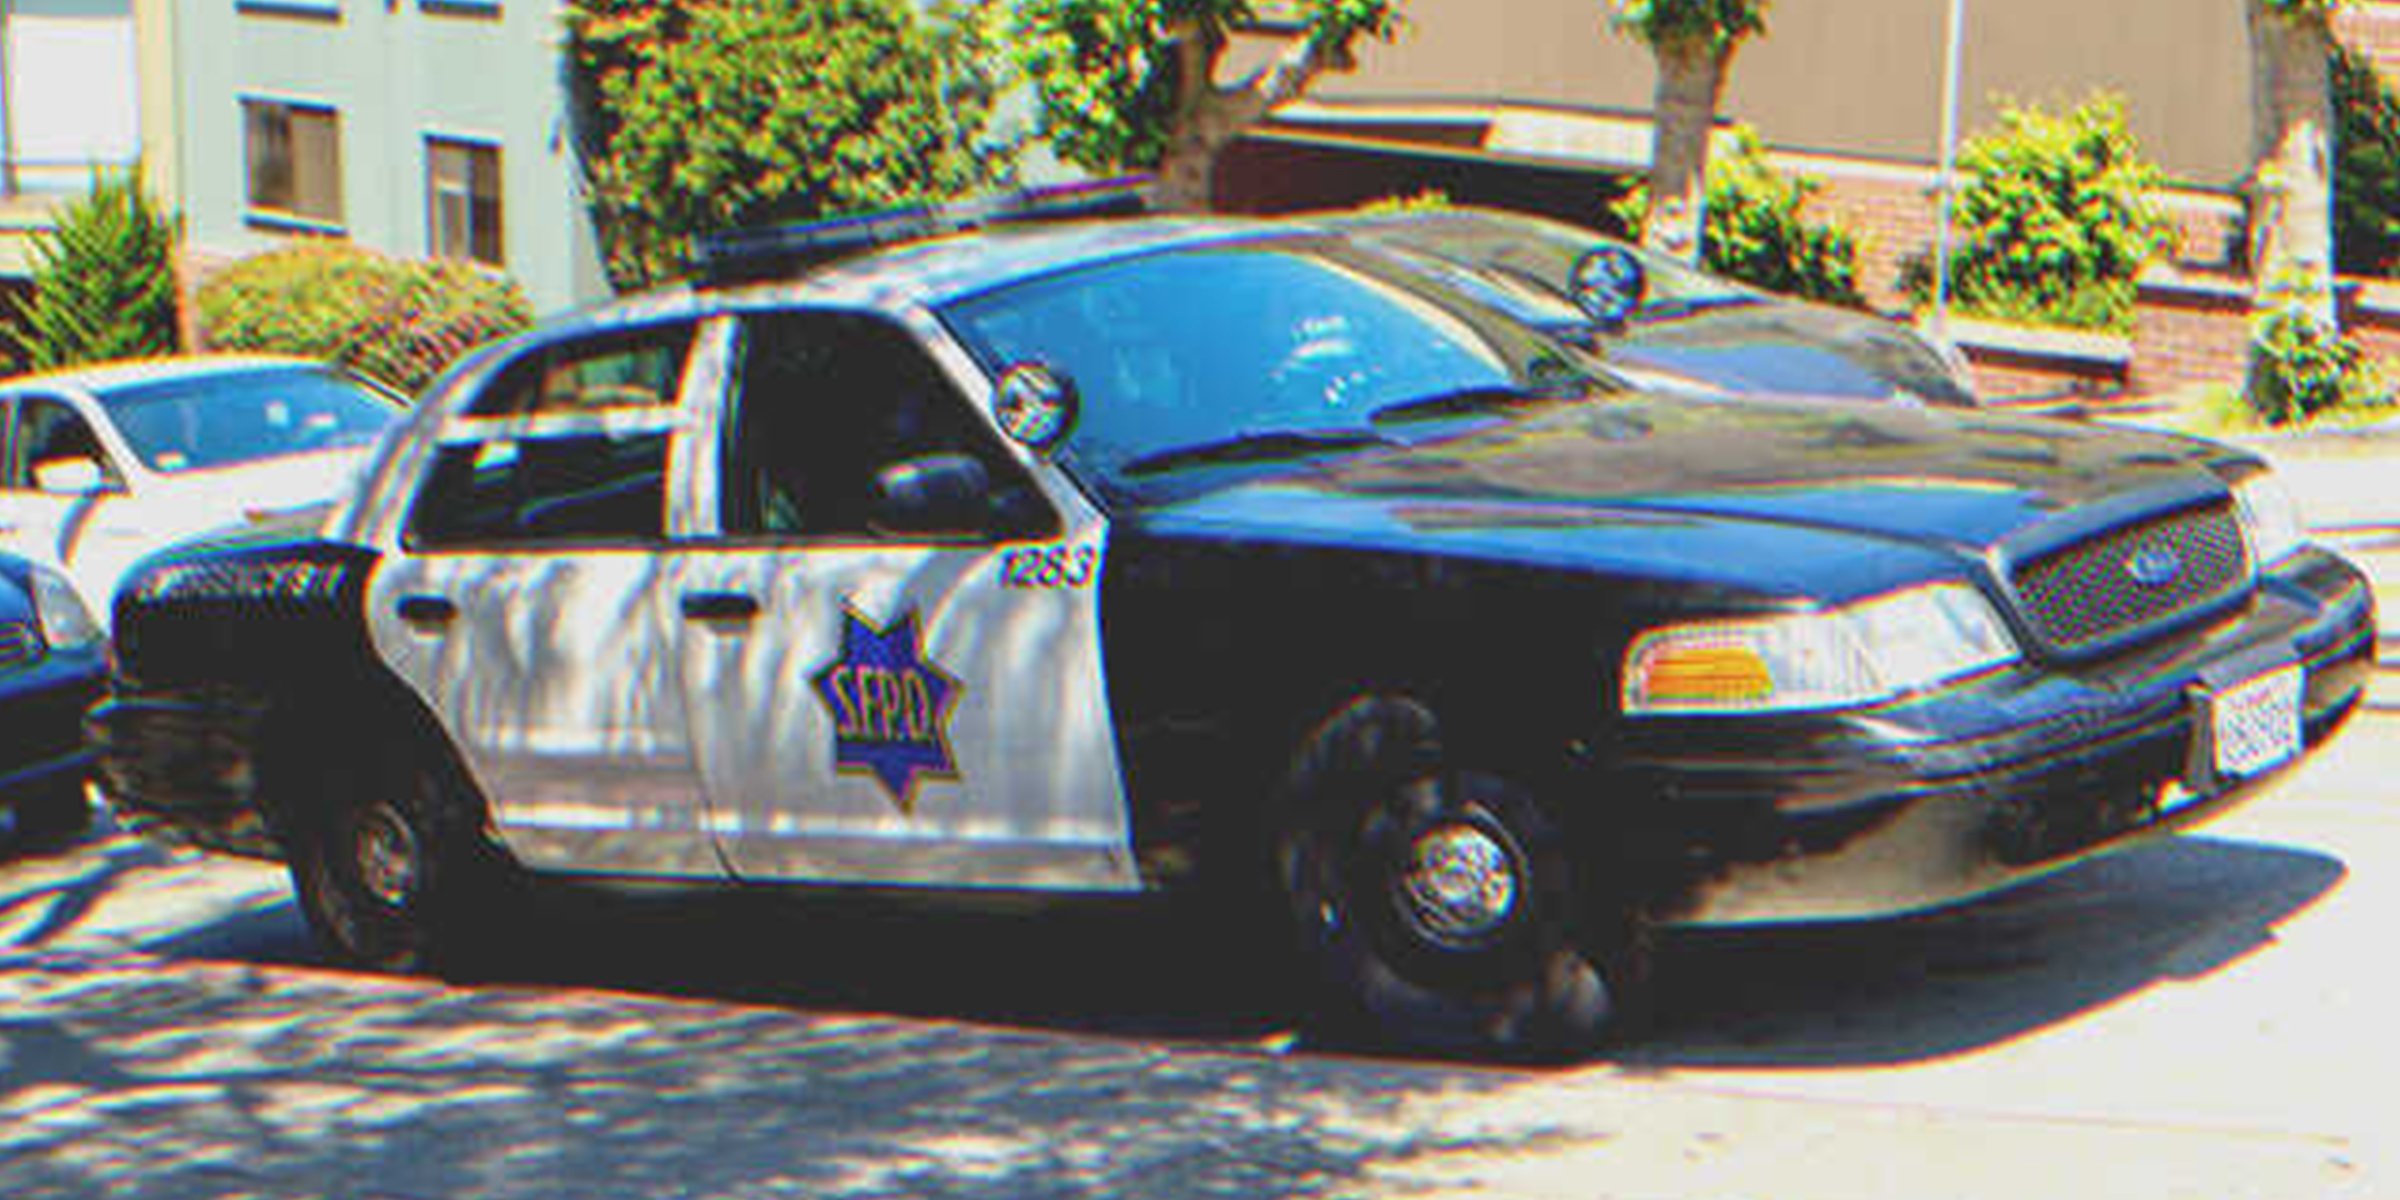 Polizeiauto | Quelle: Shutterstock